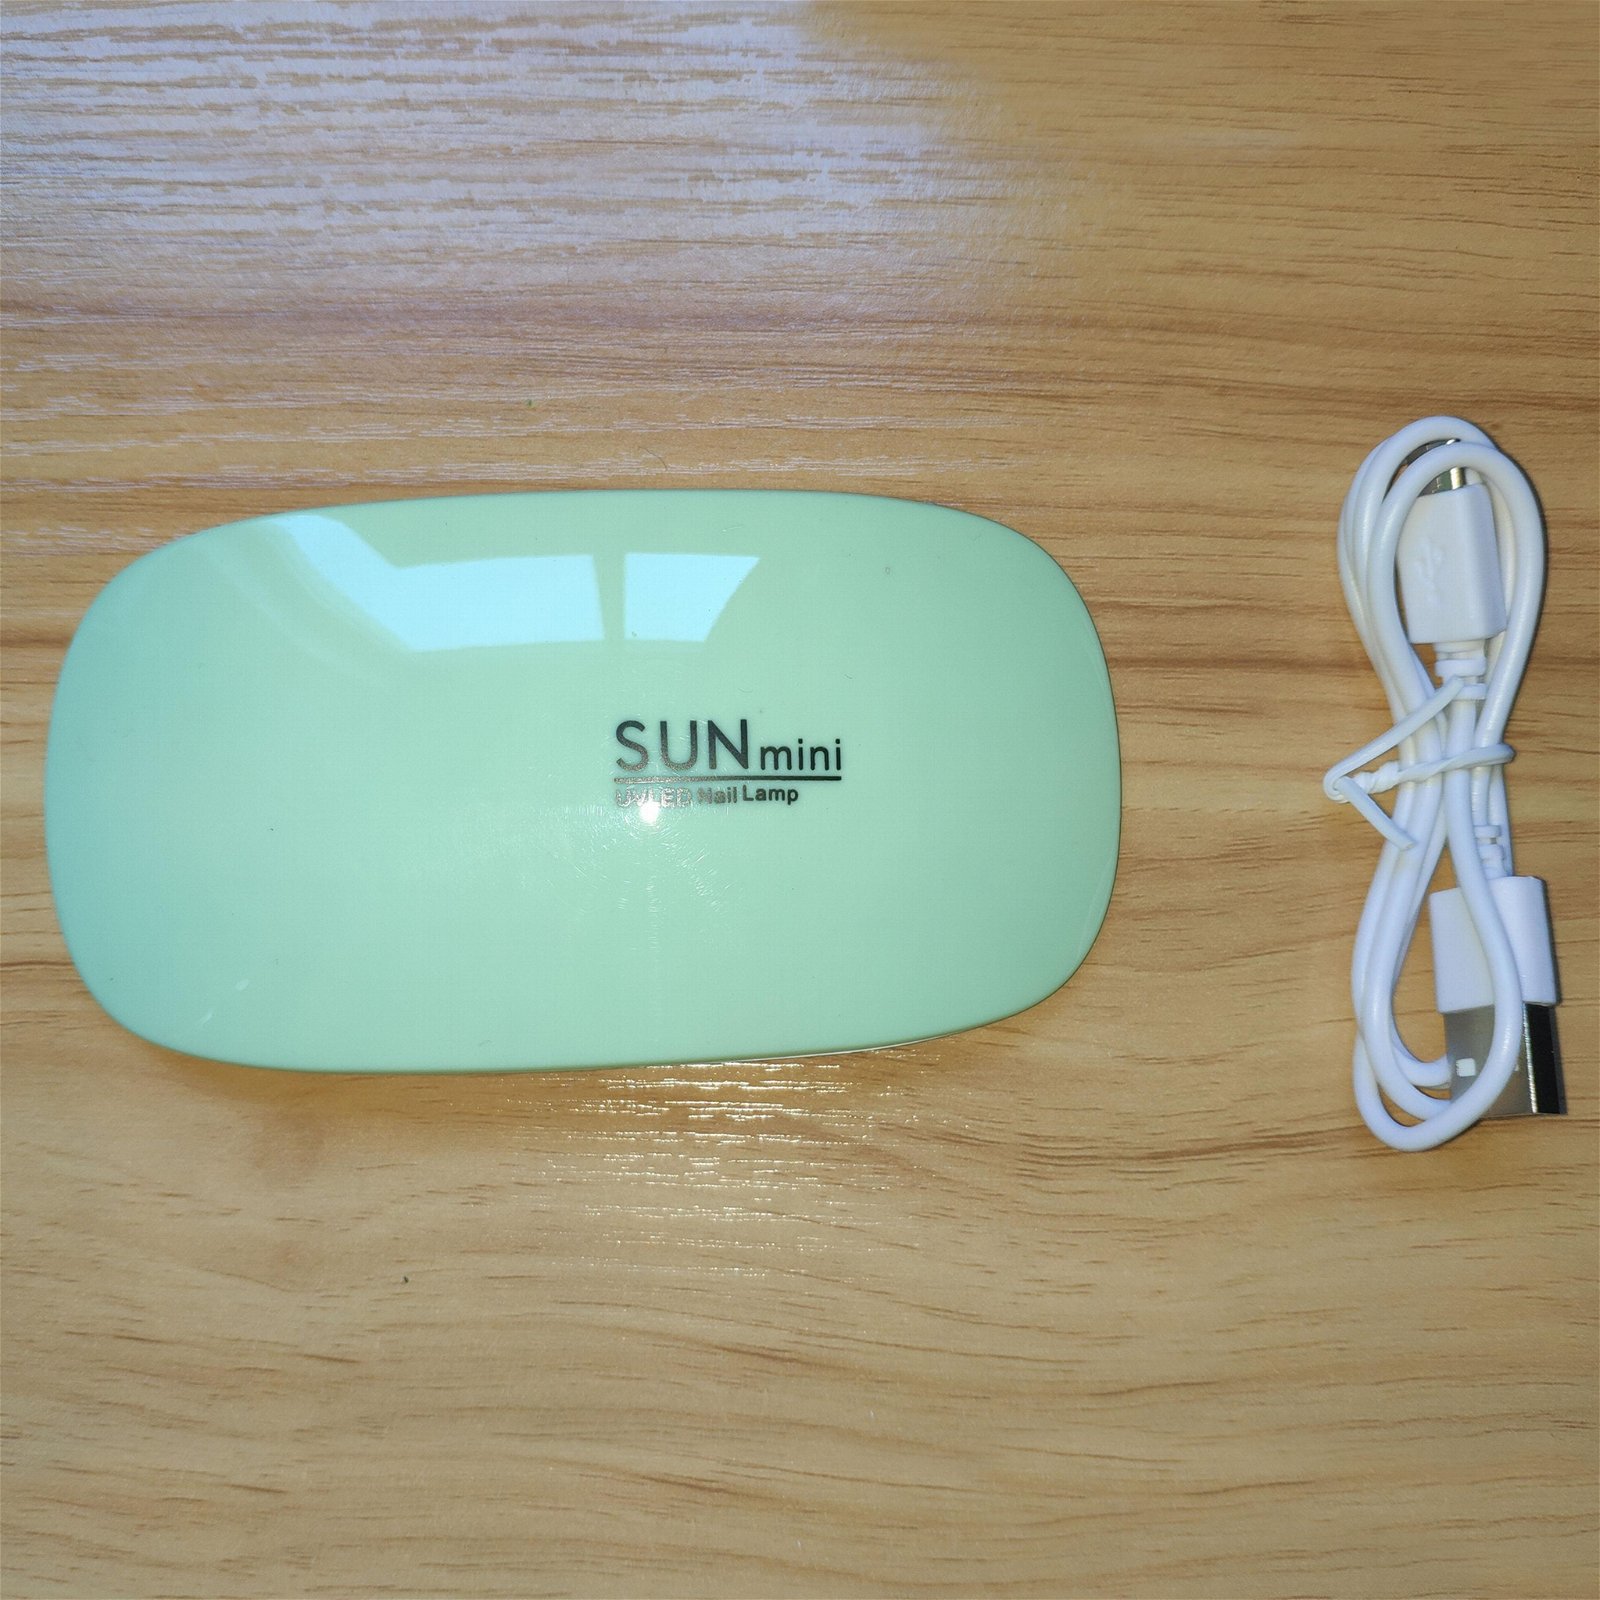 Sunmini nail lamp mouse light mini light therapy machine USB sun light LED 2